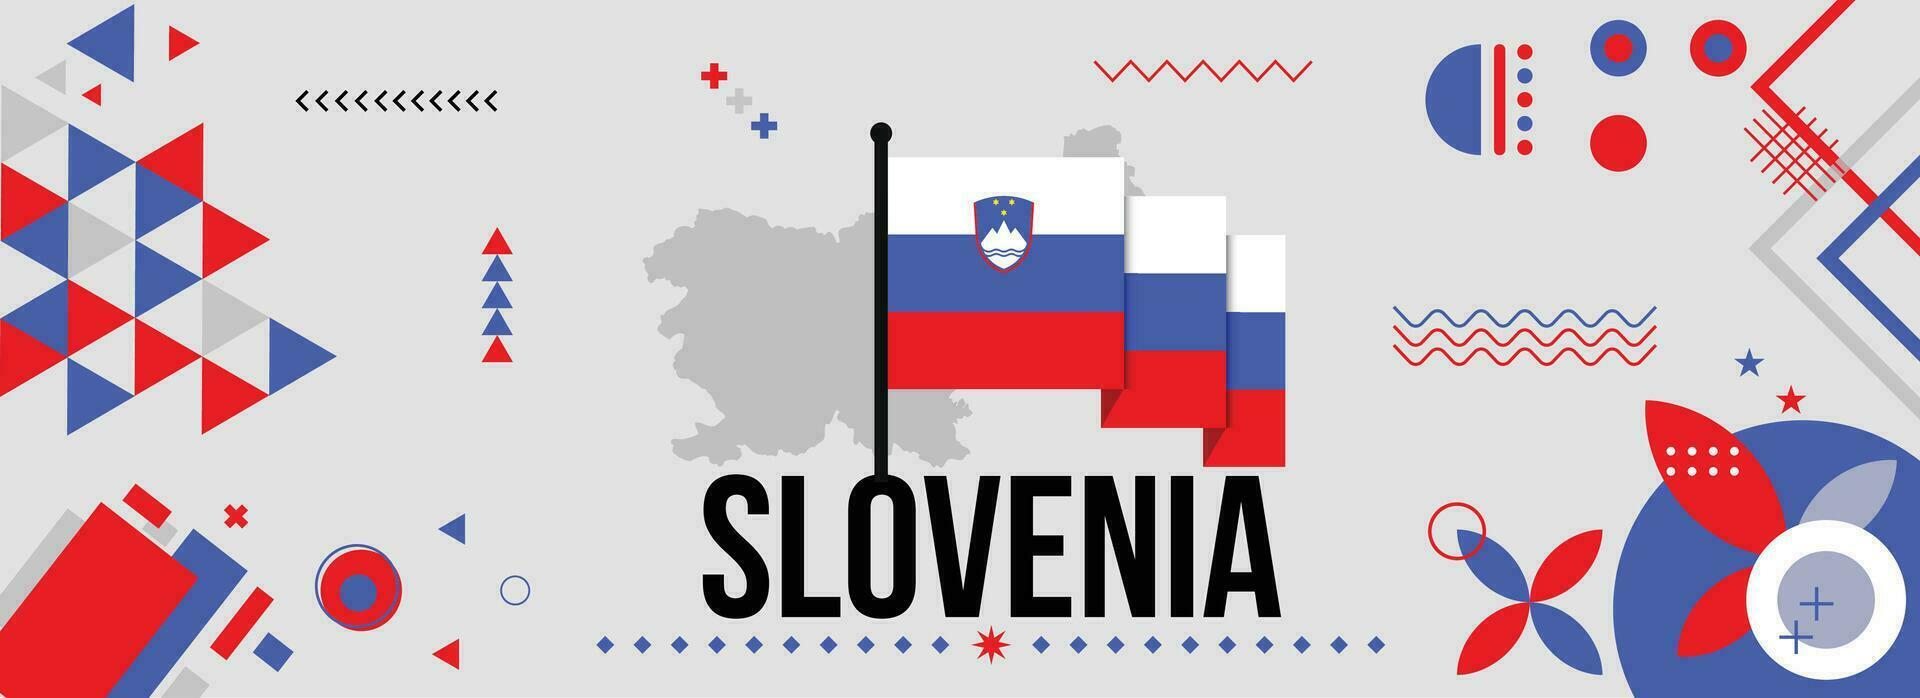 slovenia nazionale o indipendenza giorno bandiera per nazione celebrazione. bandiera e carta geografica di slovenia con sollevato pugni. moderno retrò design con typorgaphy astratto geometrico icone. vettore illustrazione.